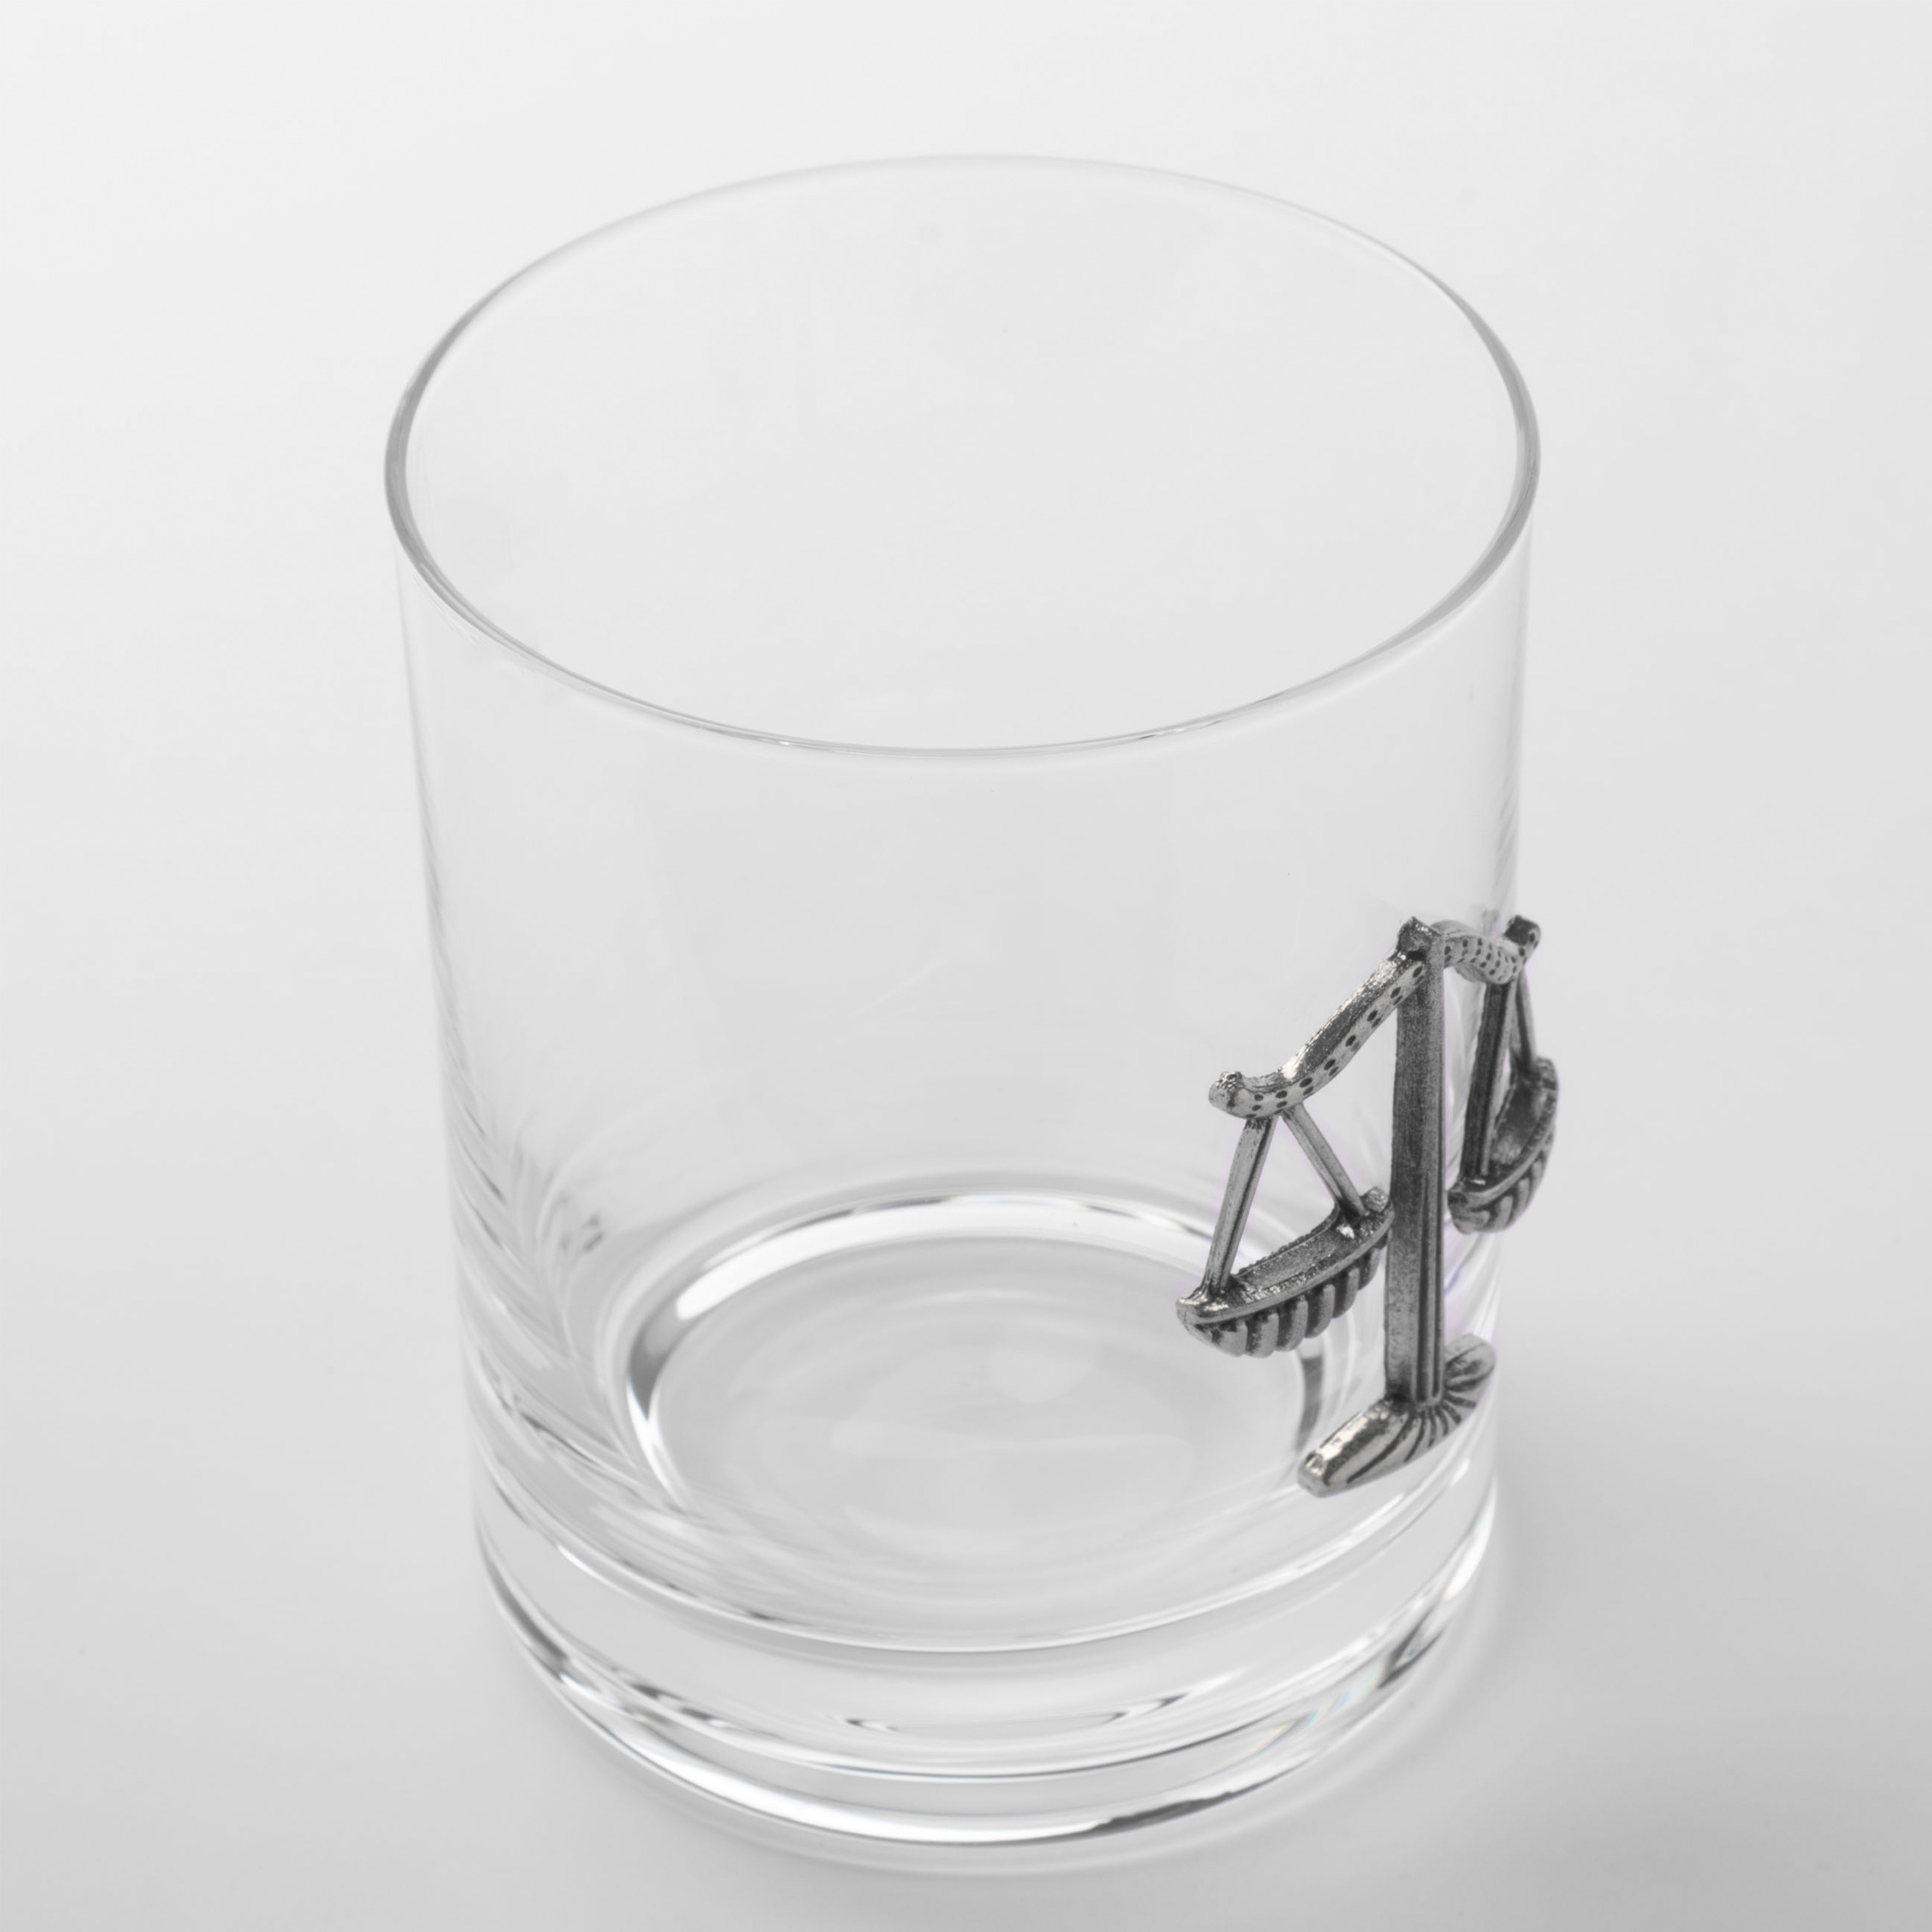 Стакан для виски, 340 мл, стекло/металл, серебристый, Весы, Zodiac изображение № 3